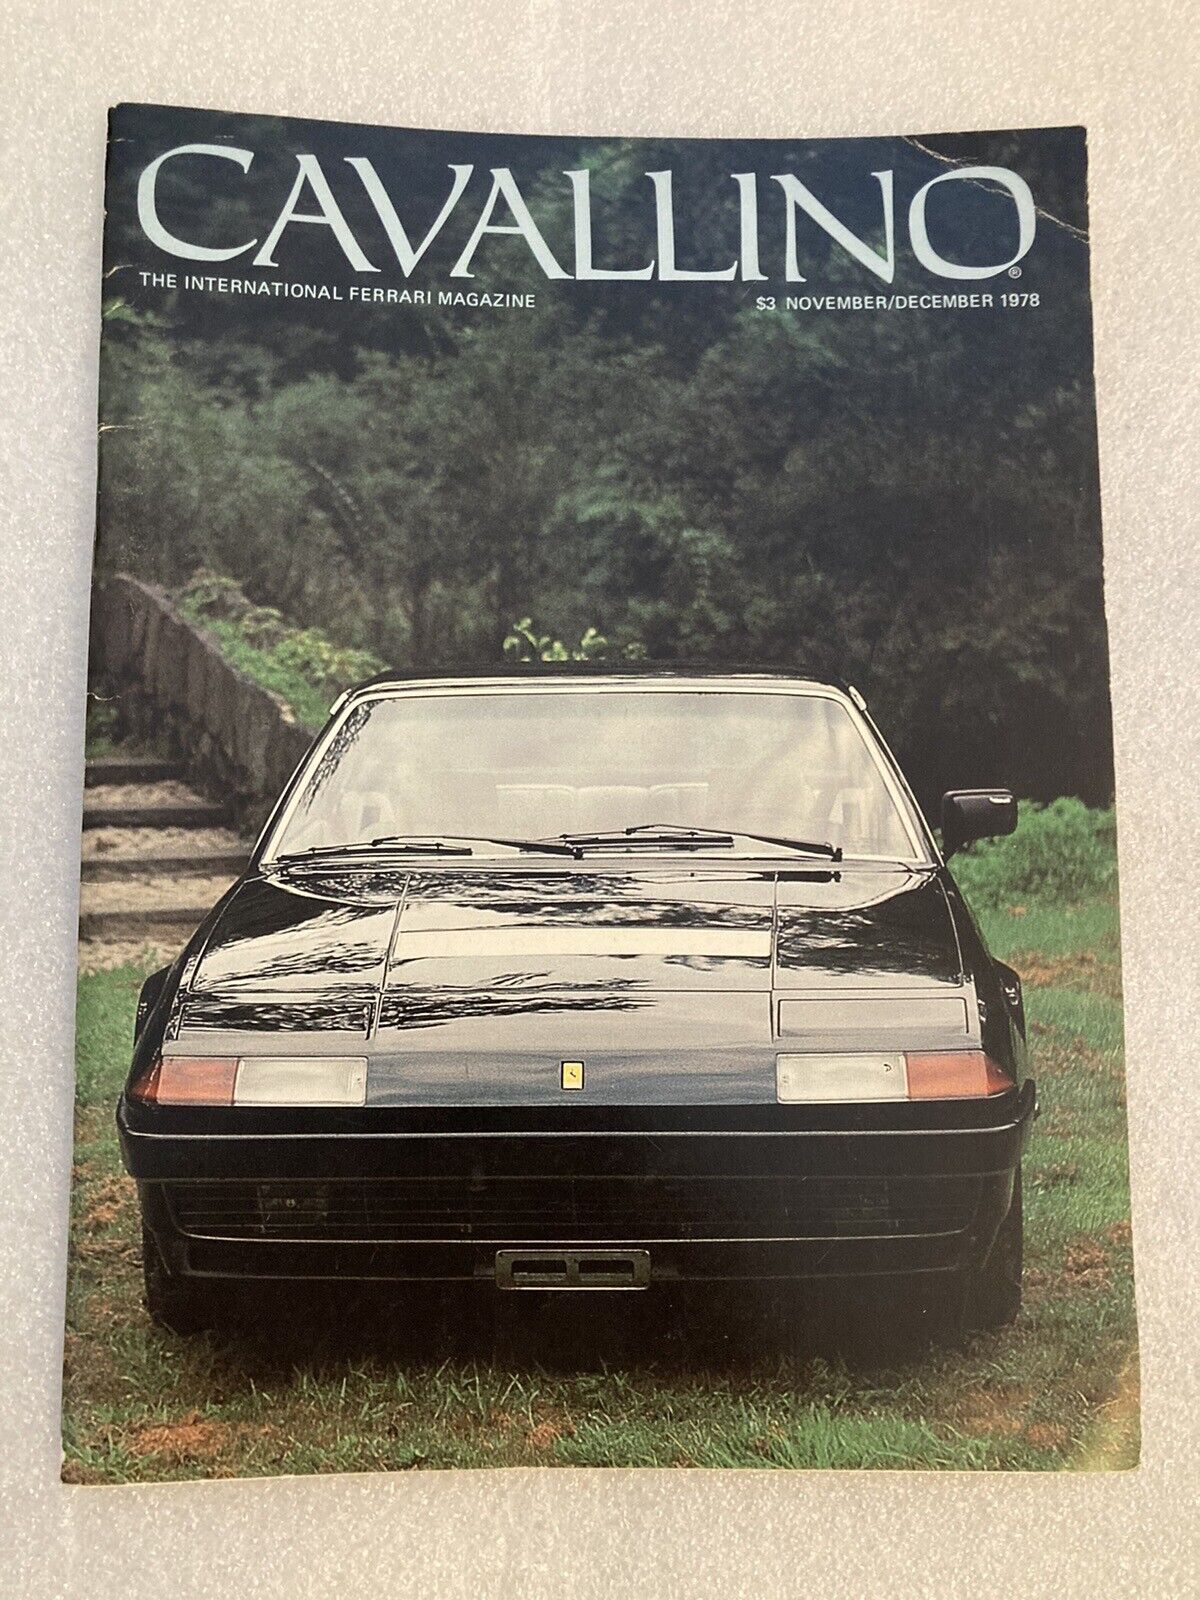 Cavallino Ferrari Magazine Issue #2 November December 1978 Original